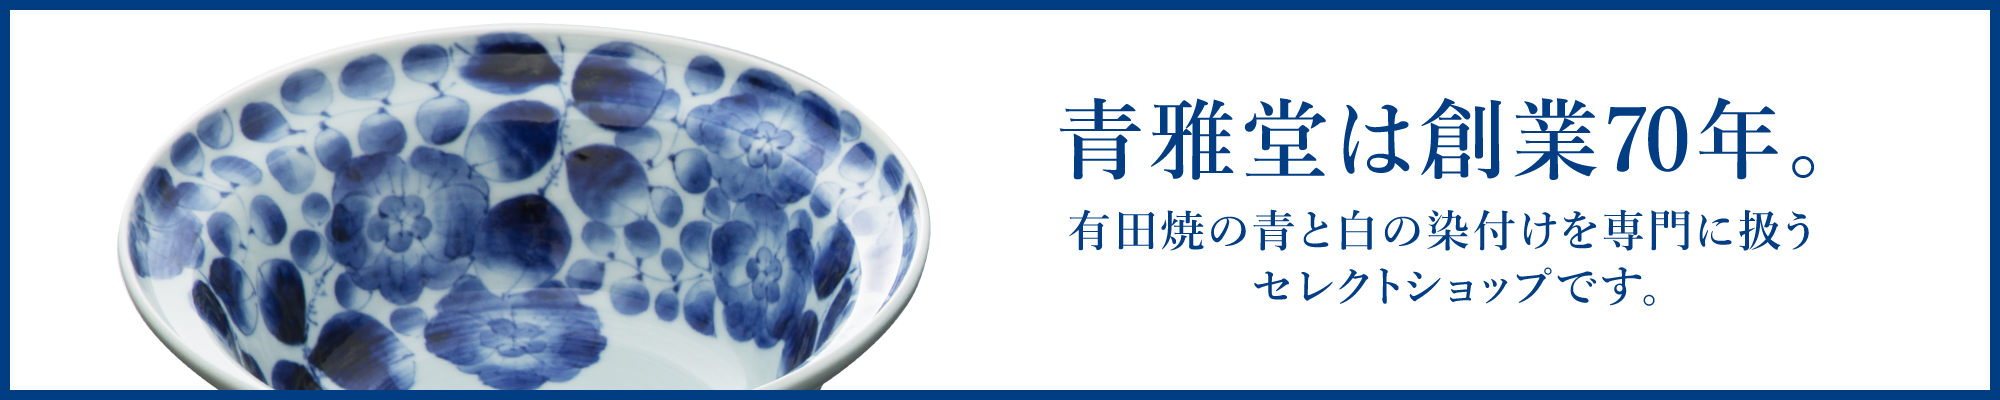 青雅堂は創業70年。有田焼の青と白の染付けを専門に扱うセレクトショップです。